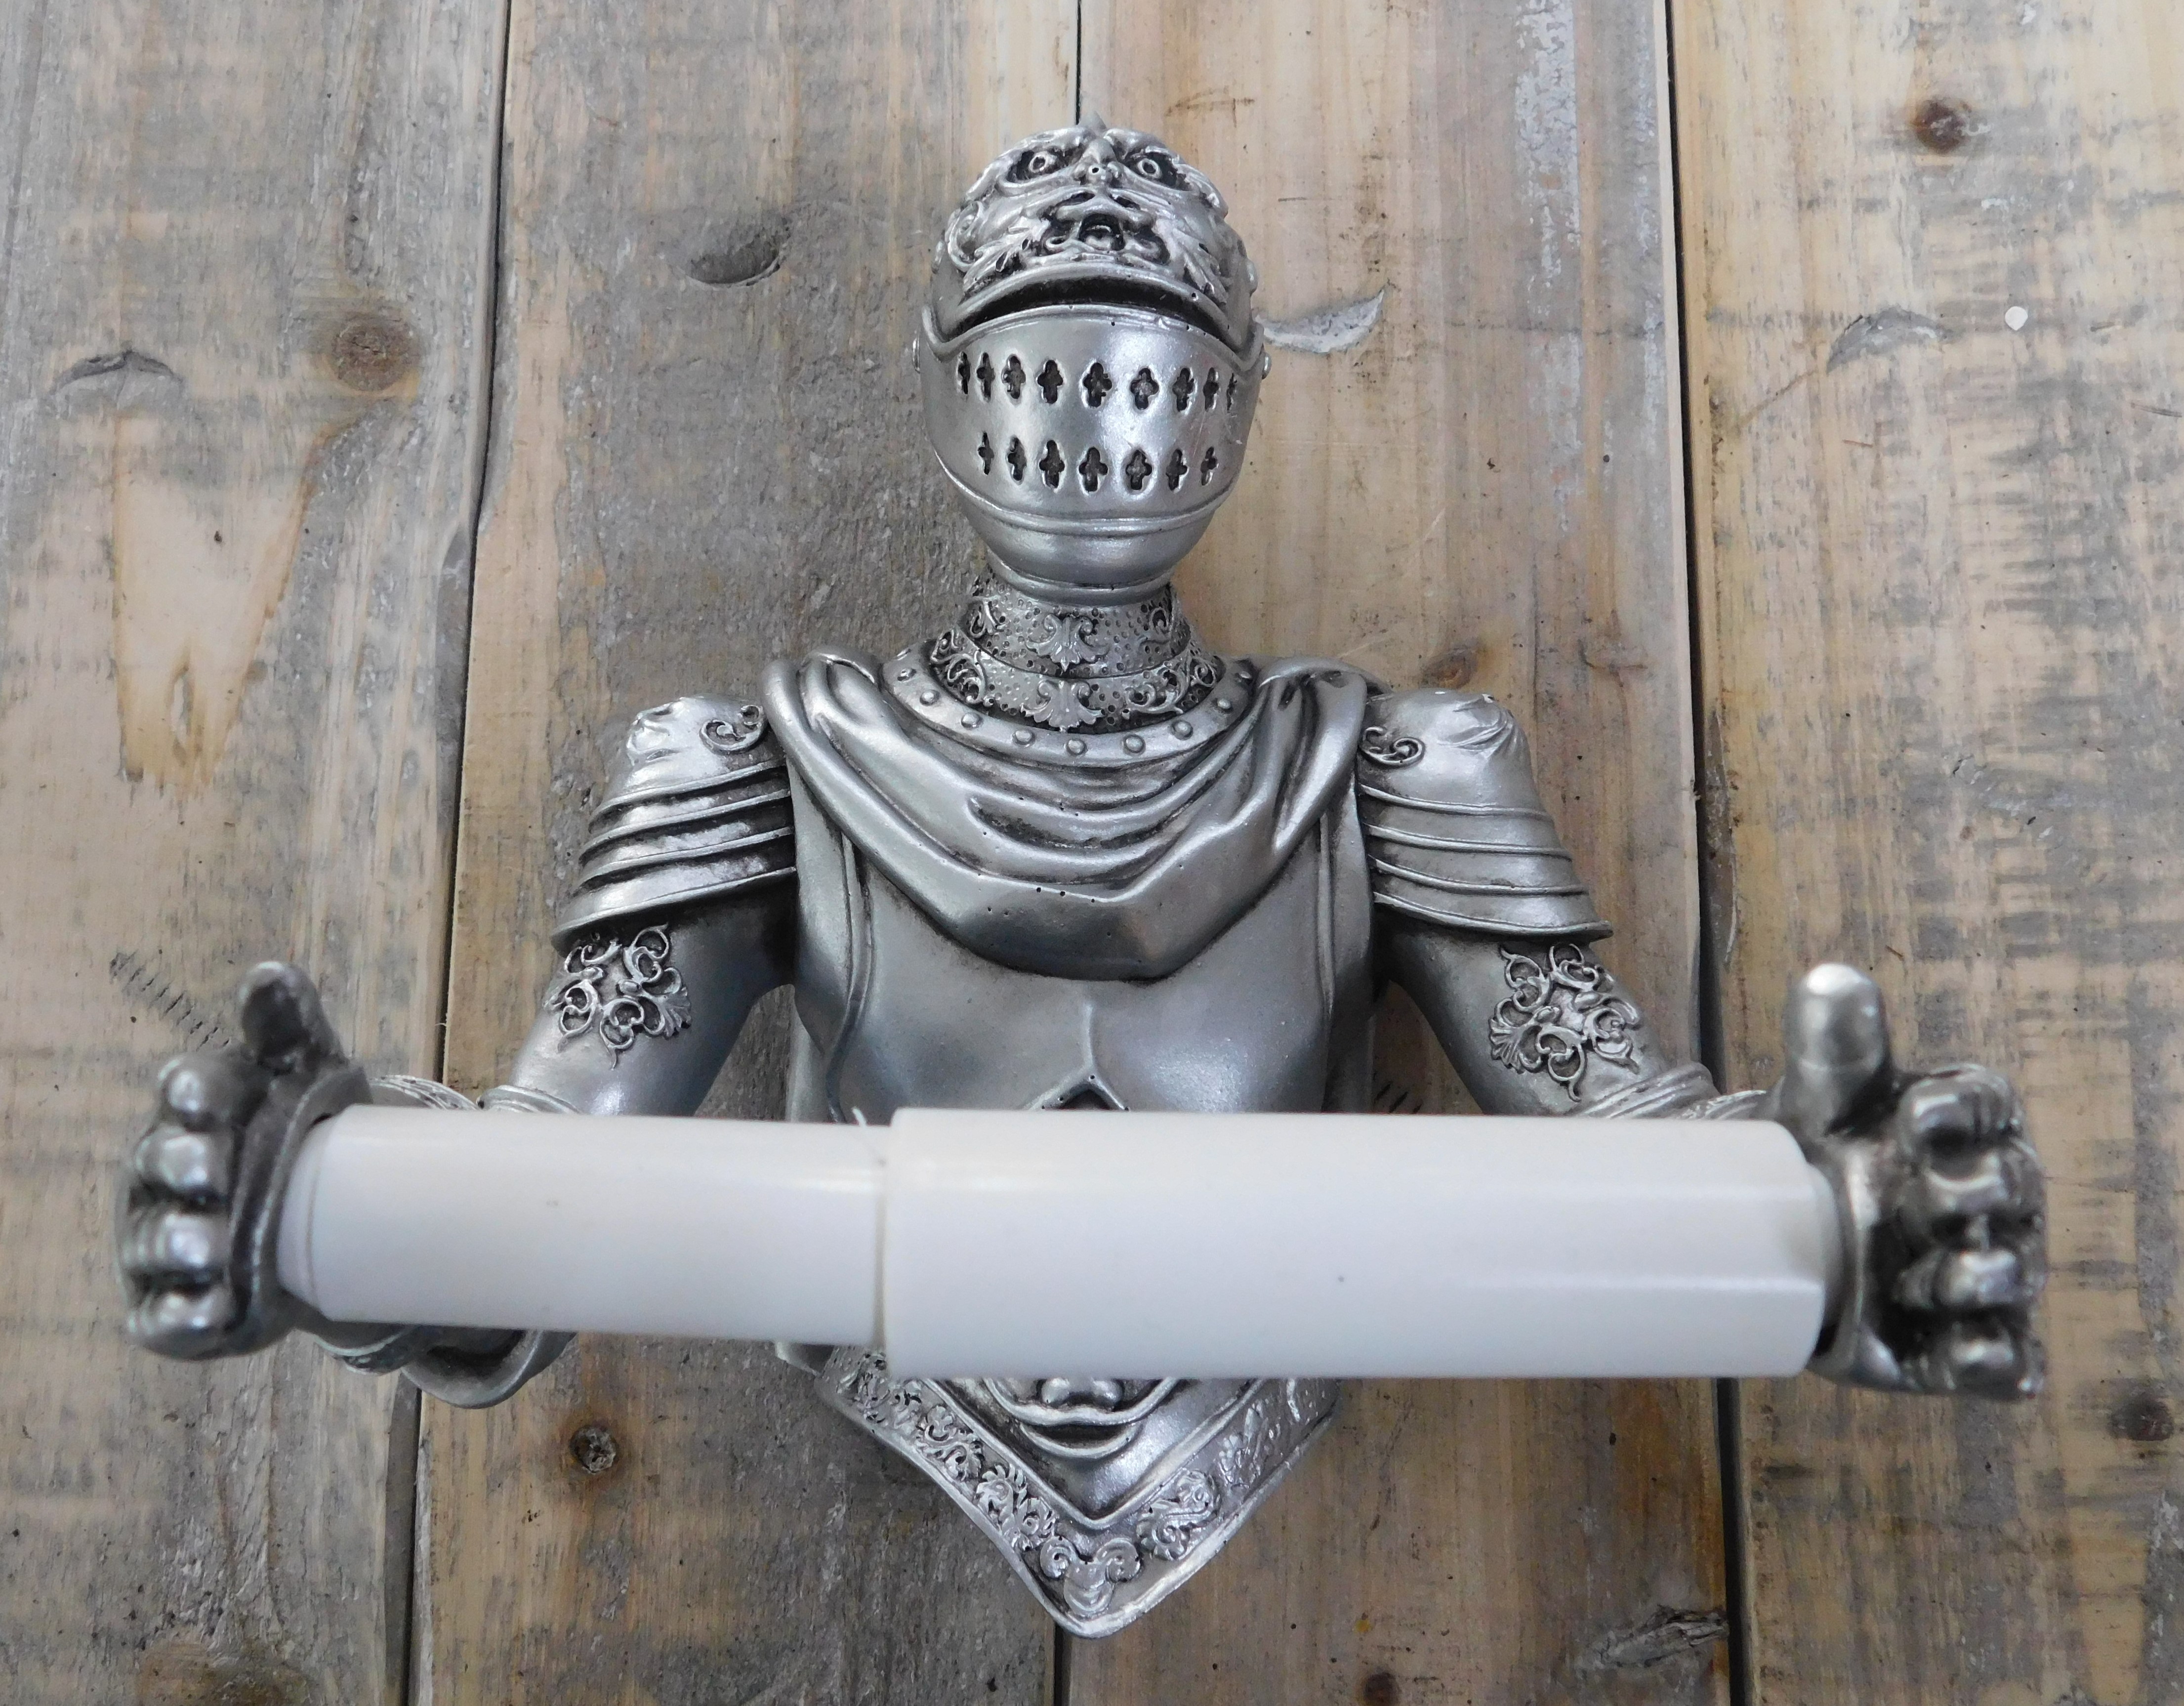 Een toiletrolhouder in de vorm van een ridder, leuke decoratie!